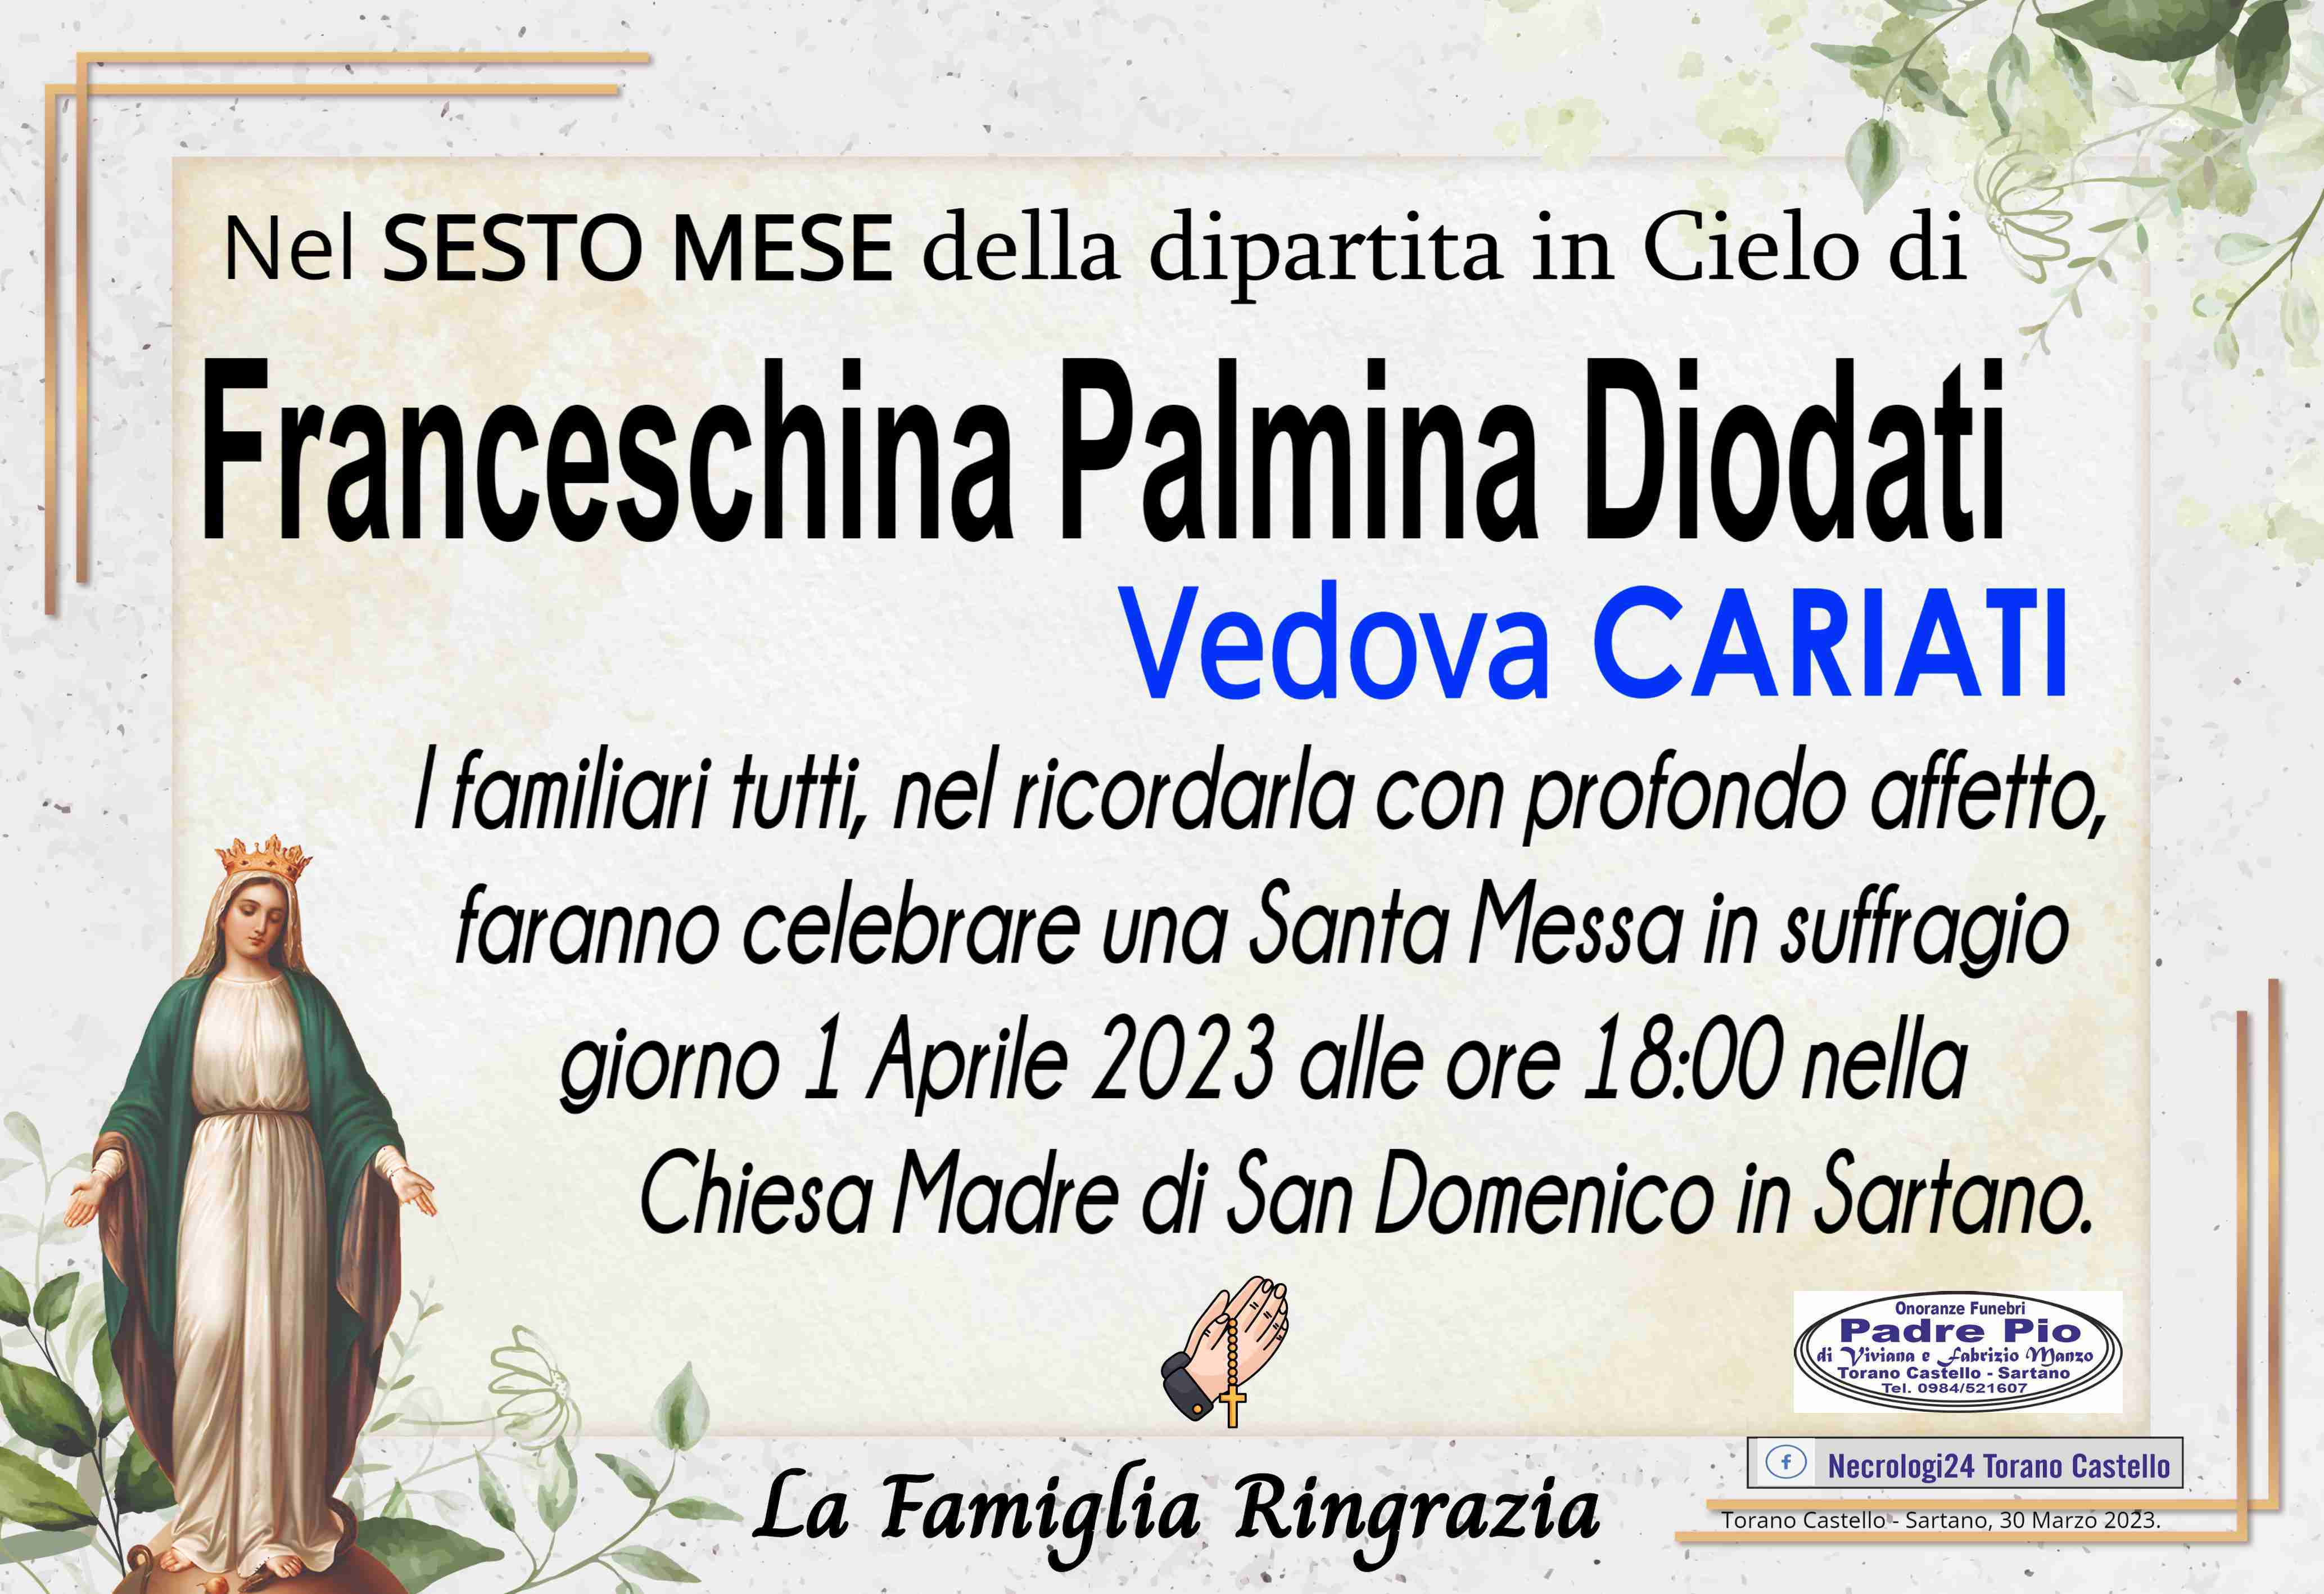 Franceschina Palmina Diodati